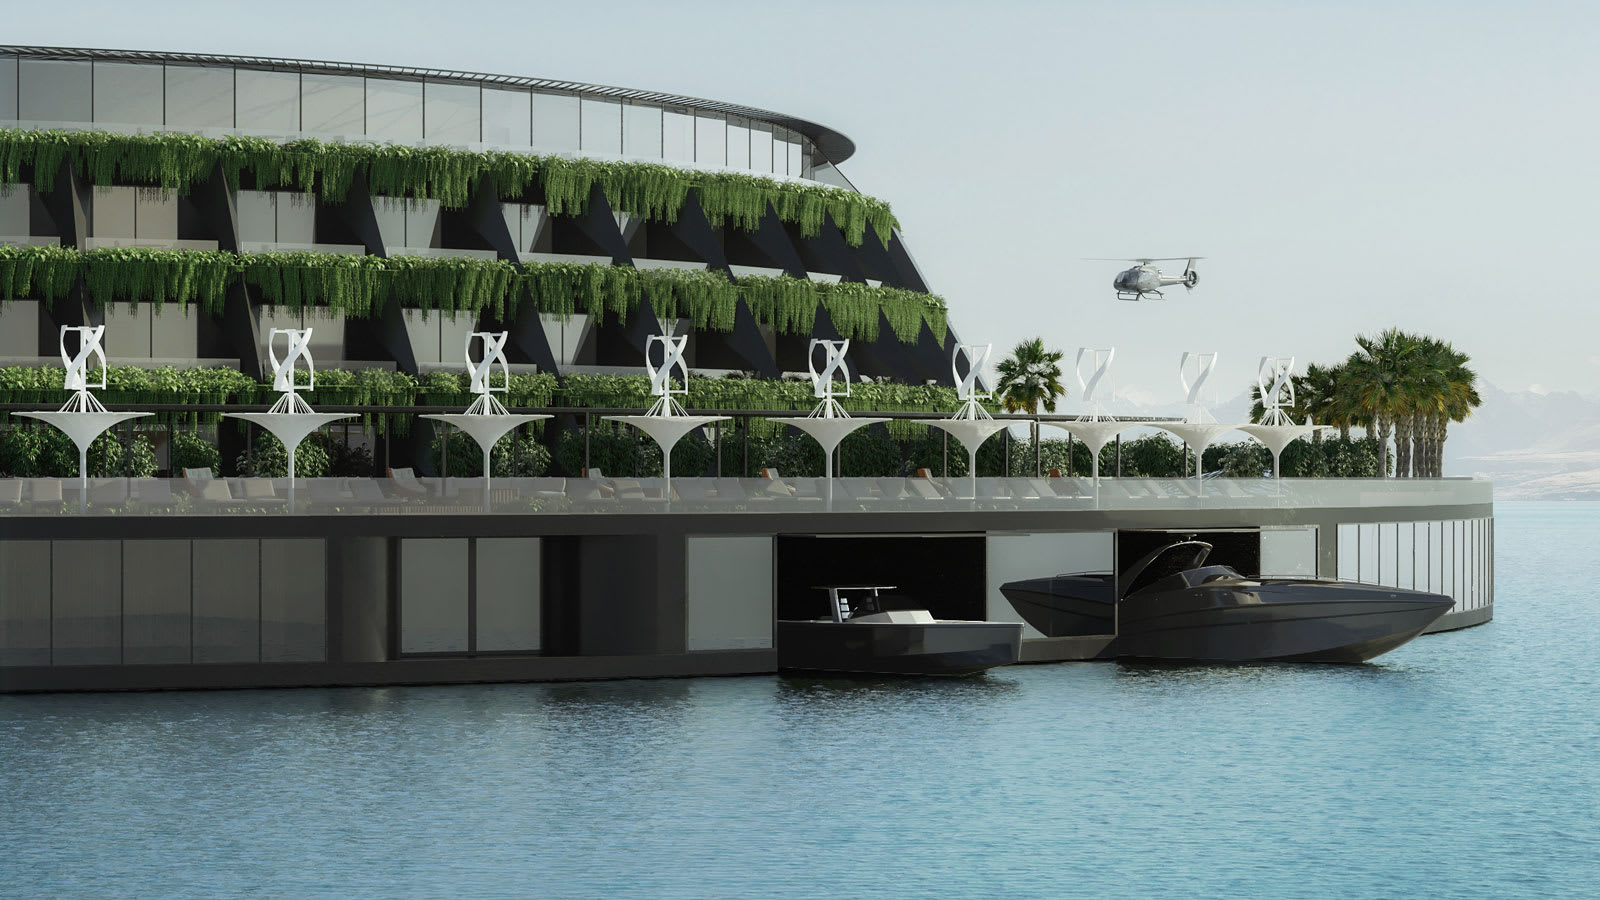 في قطر.. قد يتحول مفهوم فندق عائم ودوّار يصنع الكهرباء الخاص به إلى حقيقة